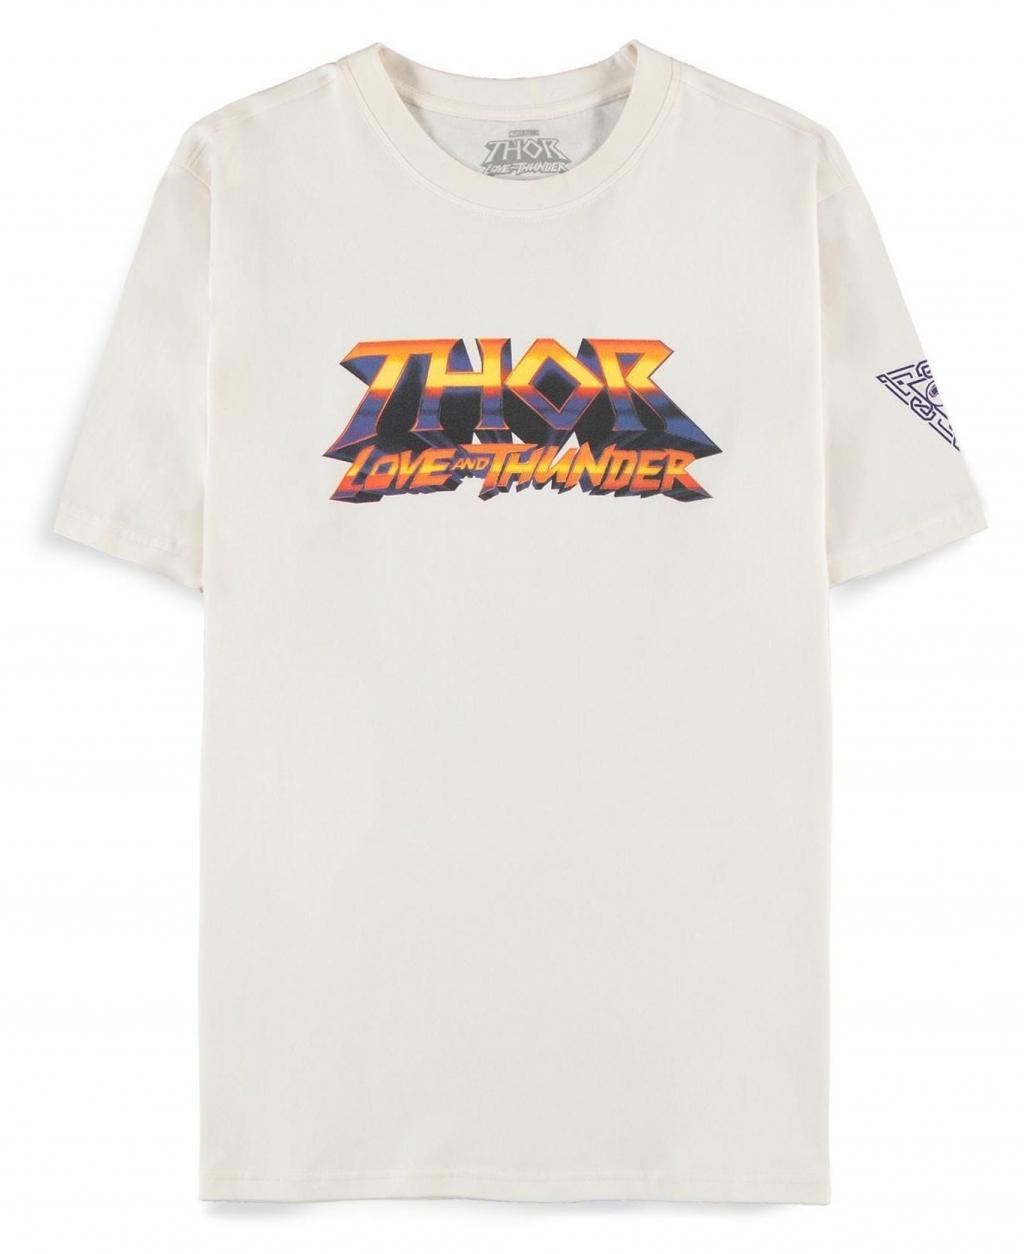 MARVEL - Thor: Love and Thunder - Men's T-Shirt (S)